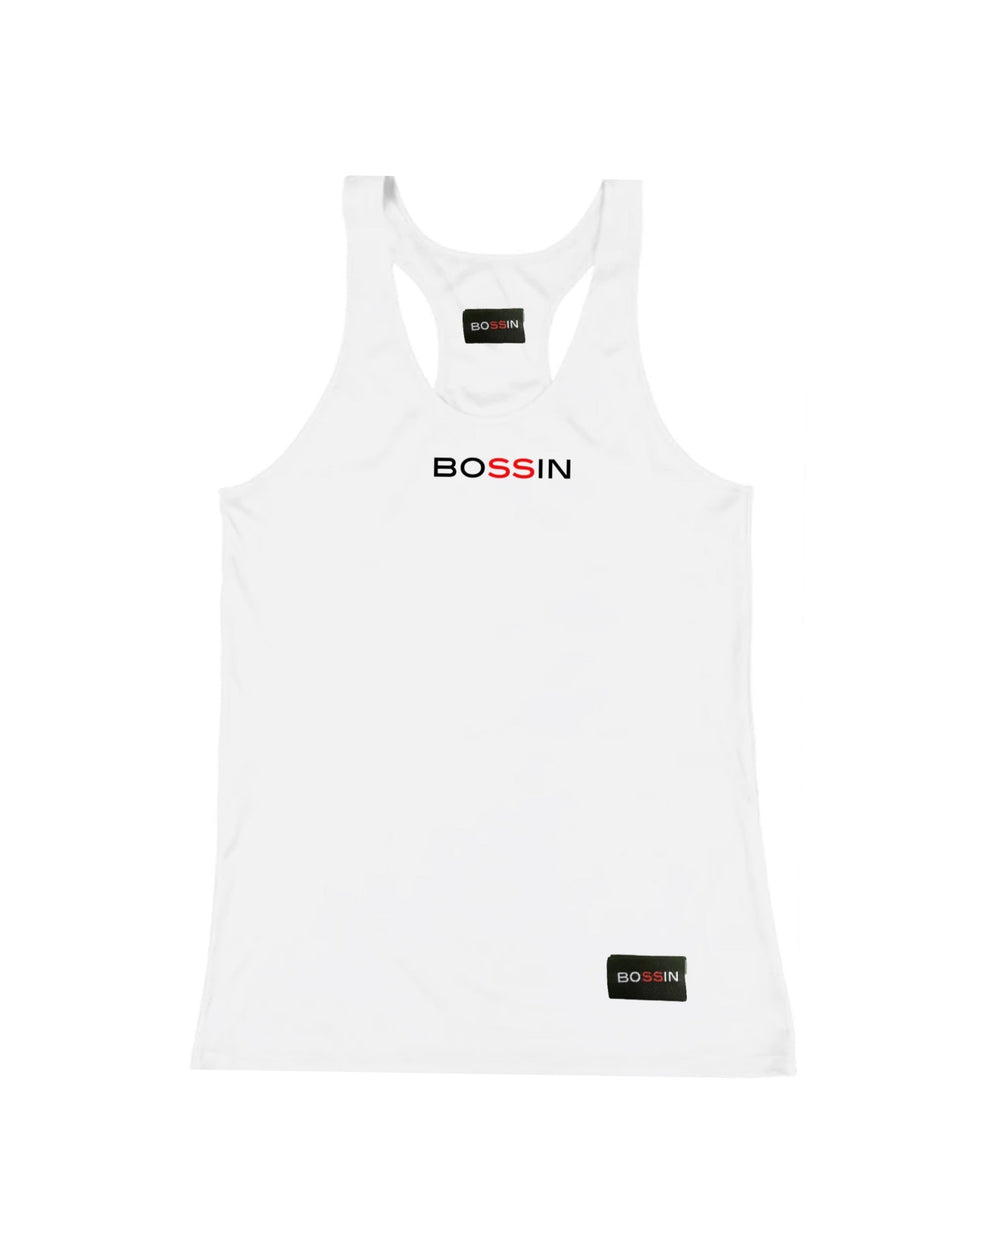 BOSSIN Original Small Logo Racerback Tank -White